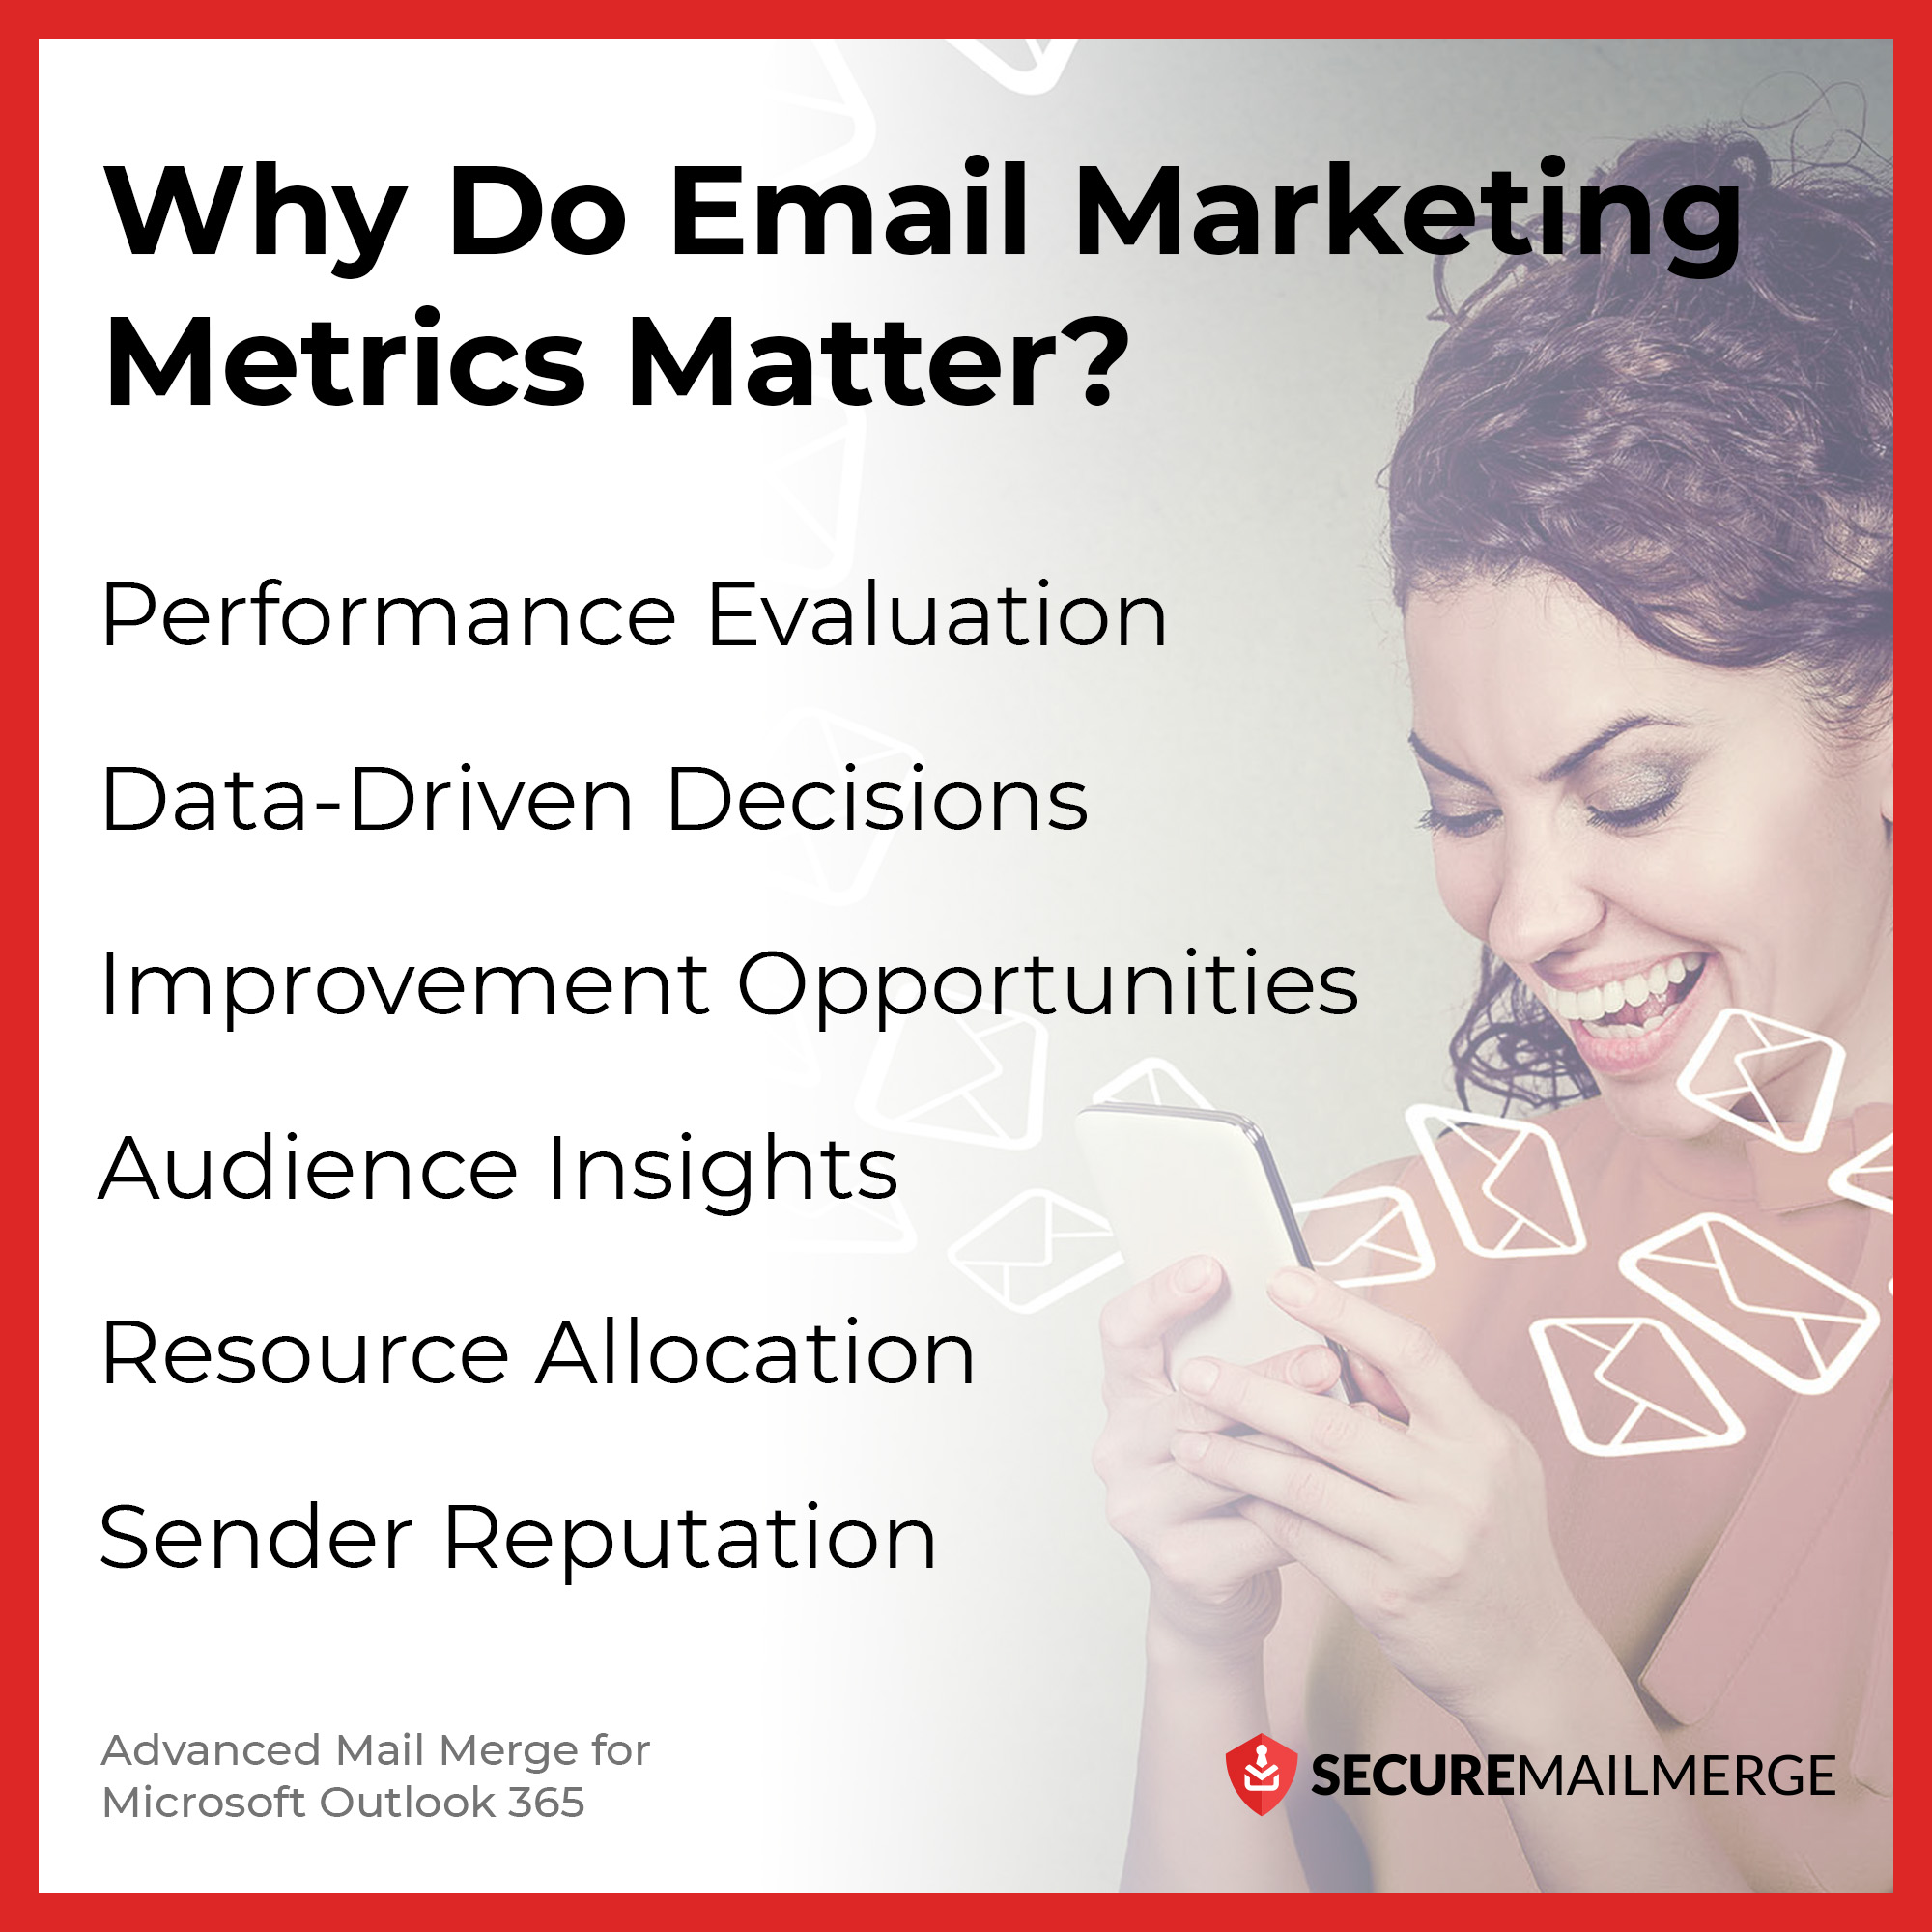 ¿Por qué son importantes las métricas de email marketing?